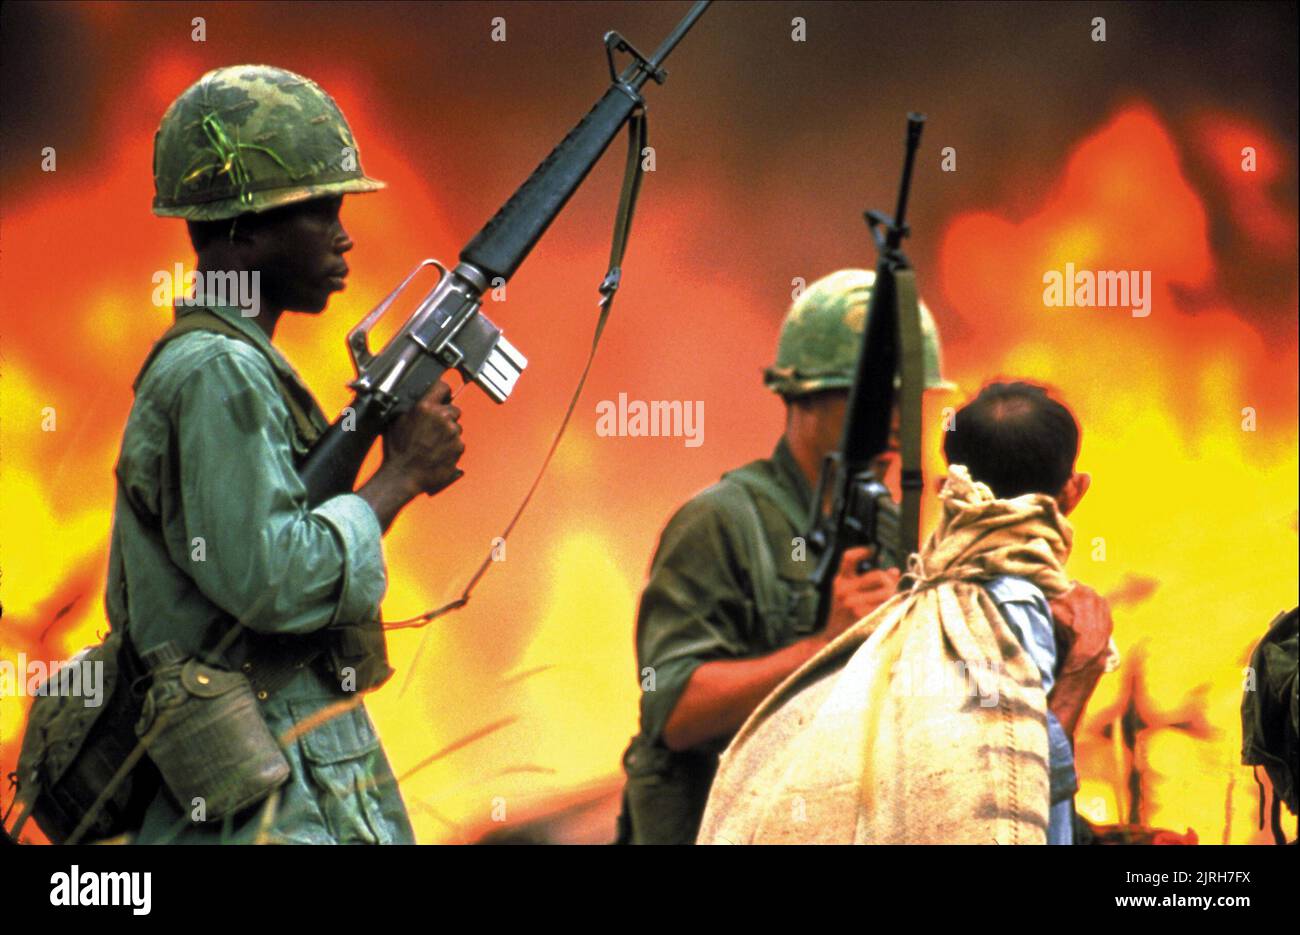 SOLDIERS IN VIETNAM, CASUALTIES OF WAR, 1989 Stock Photo